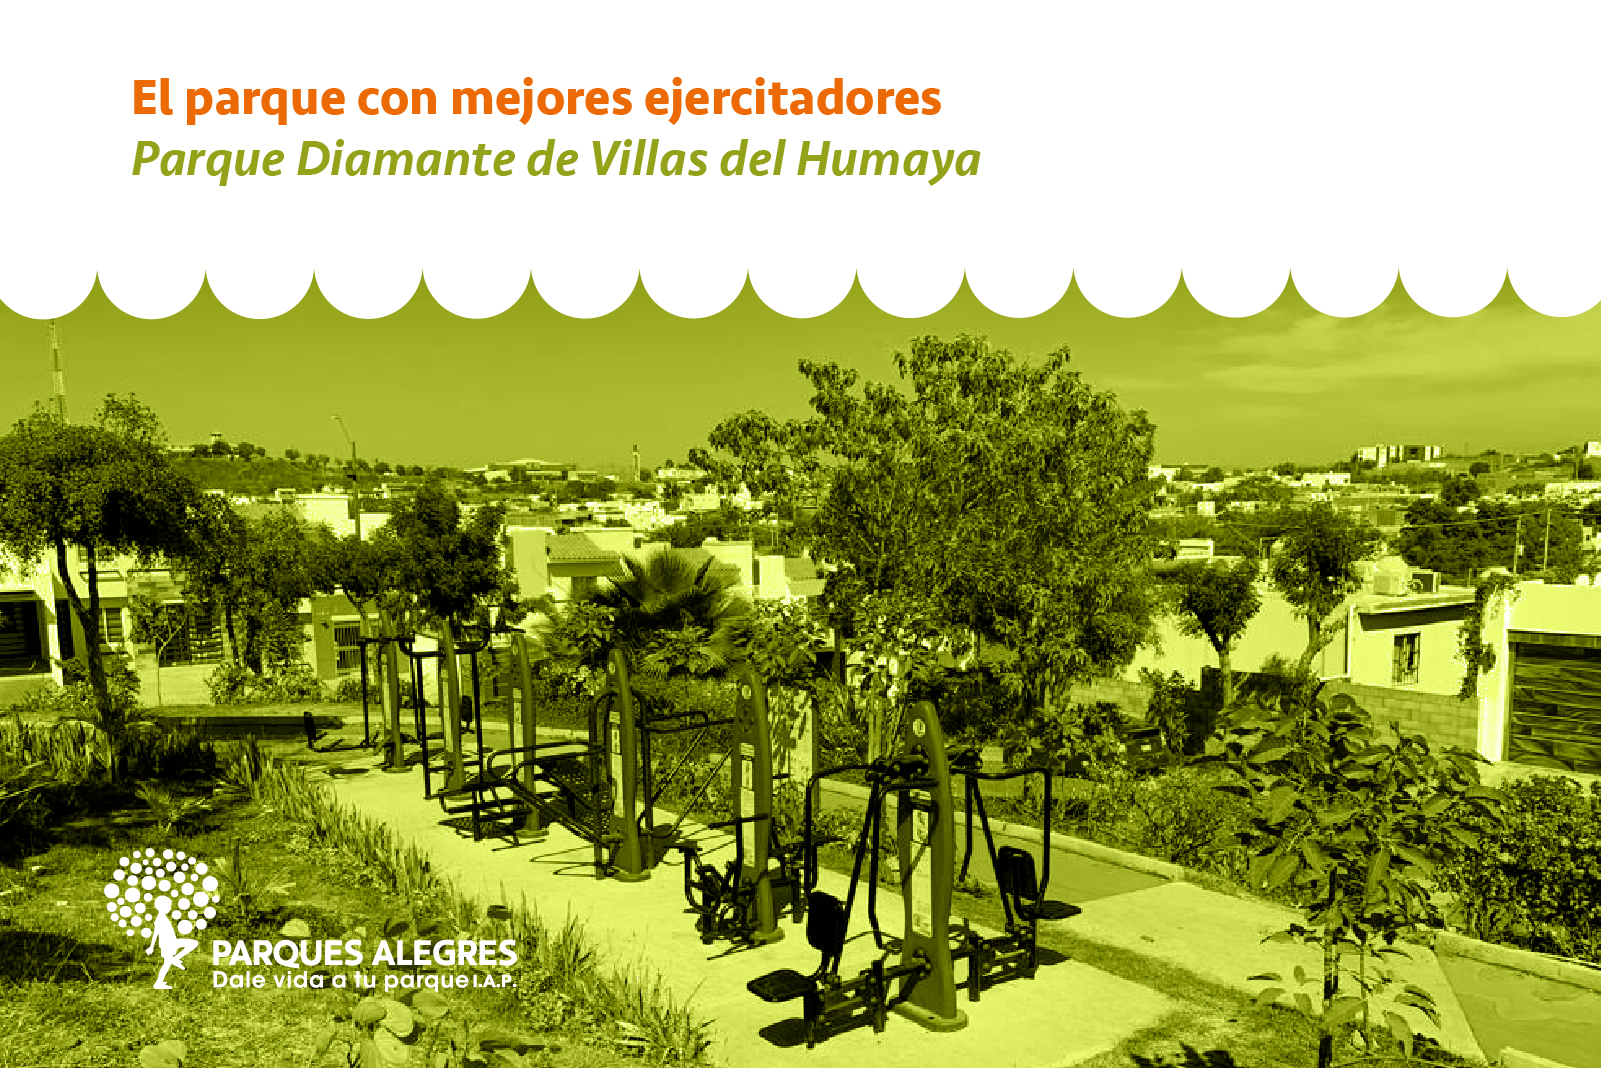 Parques más comprometidos en Culiacán